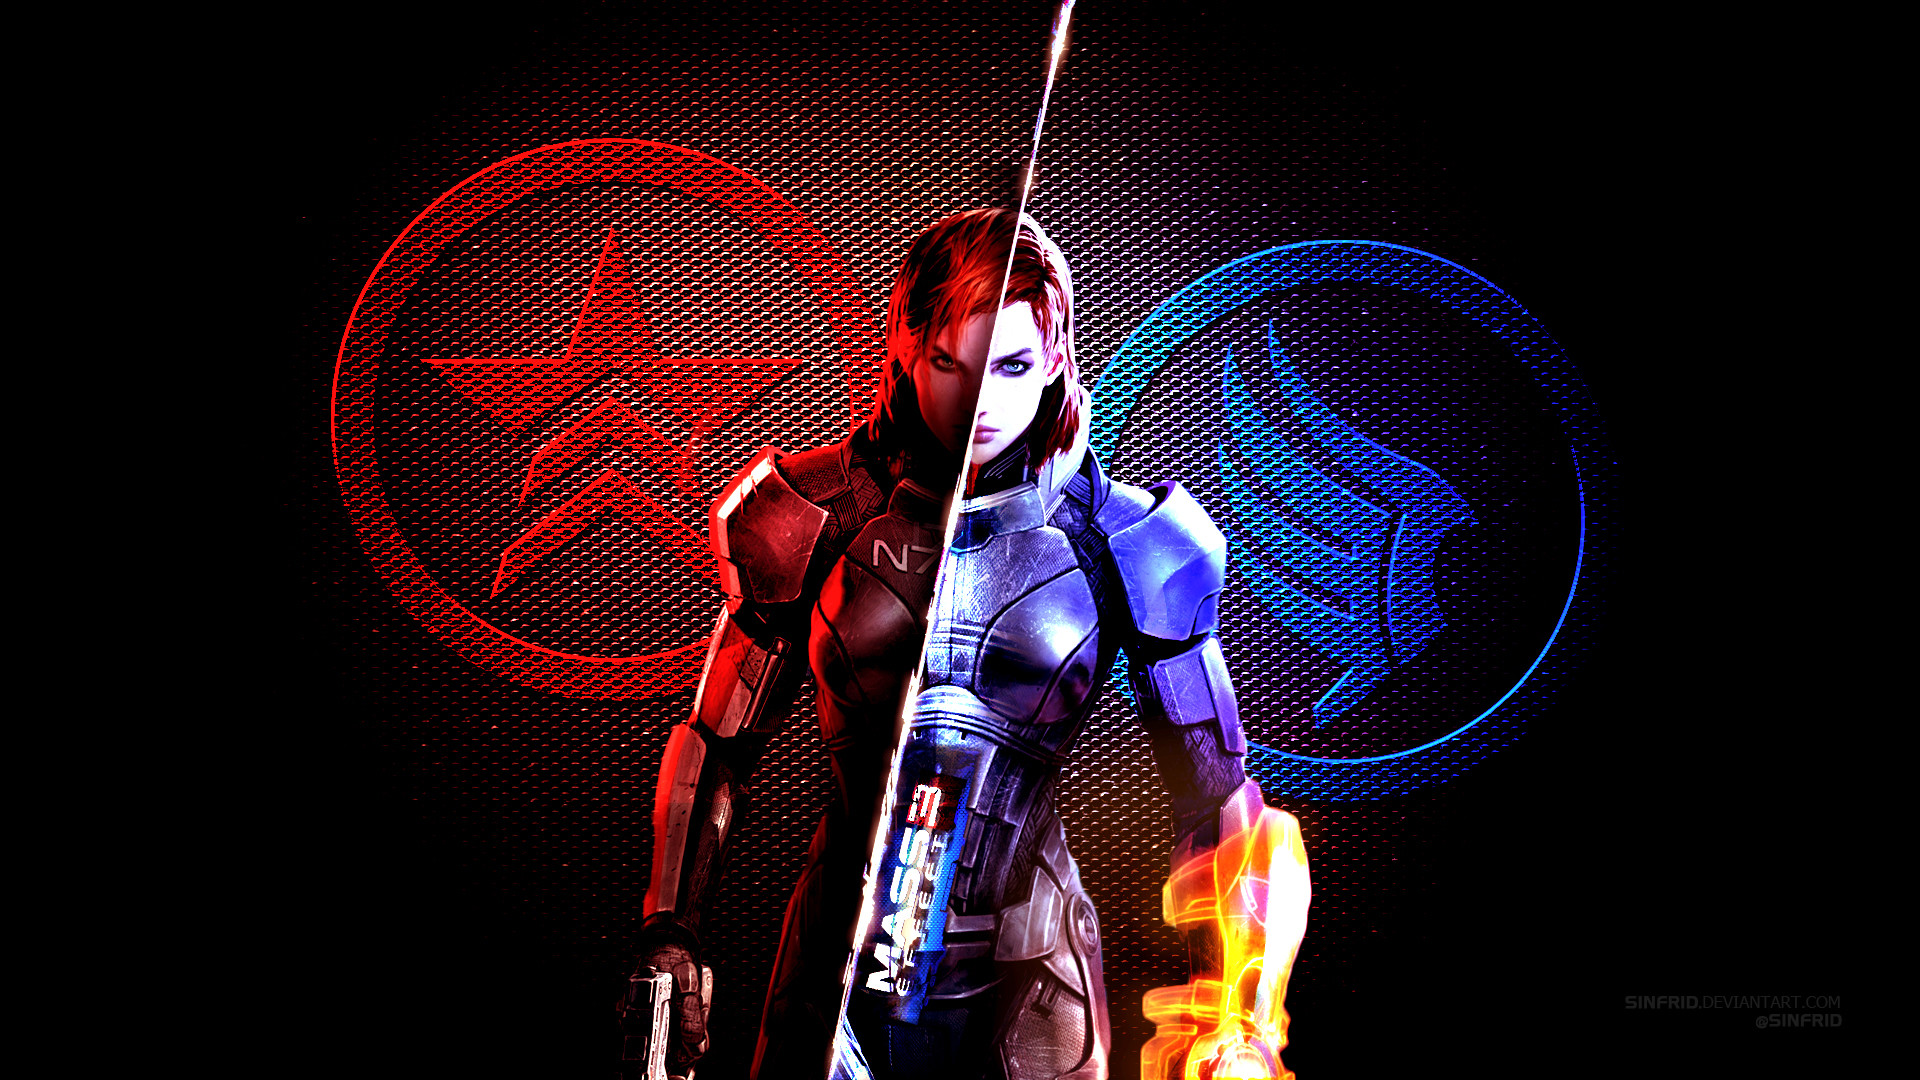 1920x1080 ... Mass Effect 3 Wallpaper 02 by Sinfrid